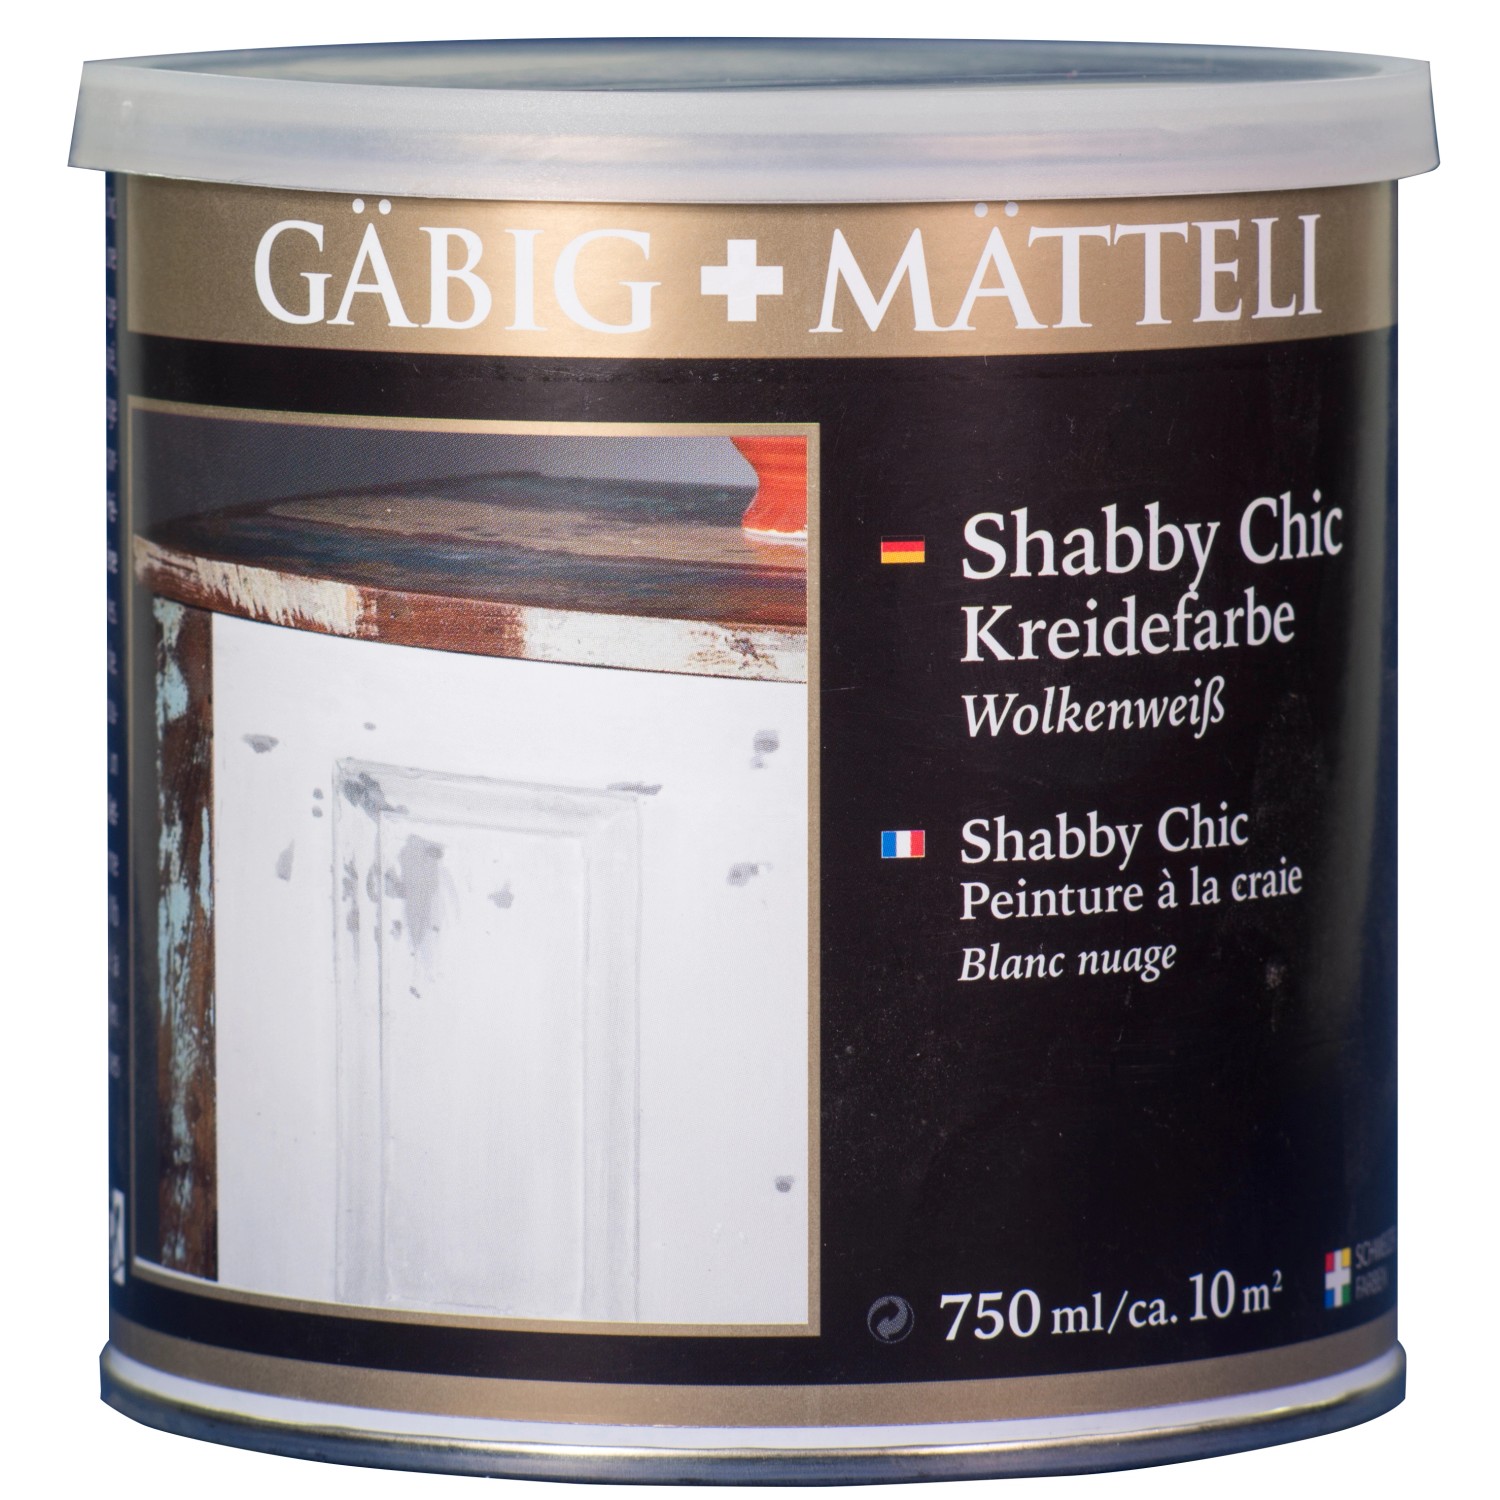 Gäbig+Mätteli Shabby Chic Kreidefarbe Wolkenweiß matt 750 ml von Gäbig+Mätteli